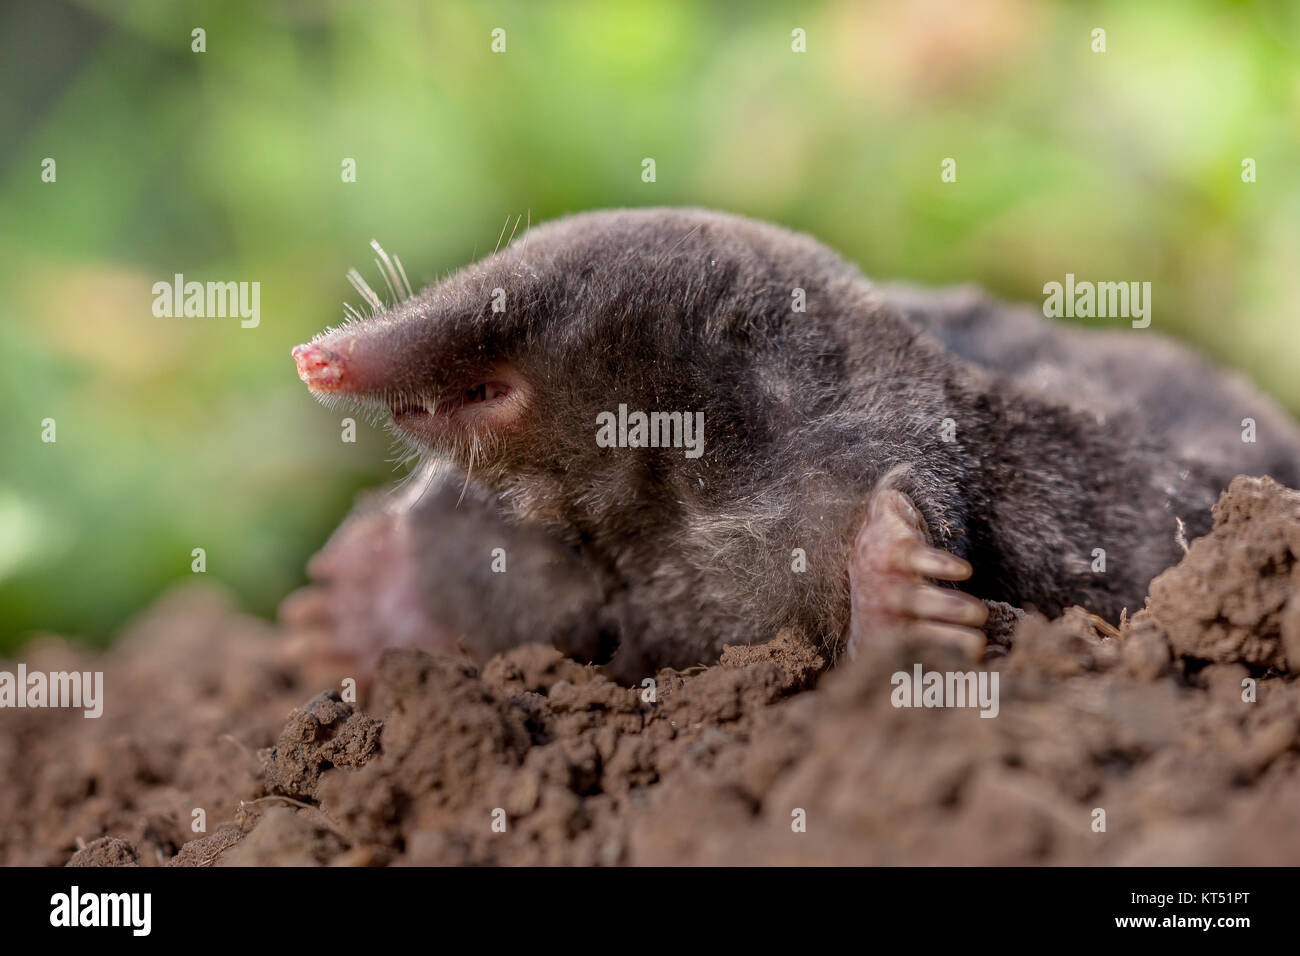 Unione mole o mole comune questo è un mammifero dell'ordine Soricomorpha Foto Stock